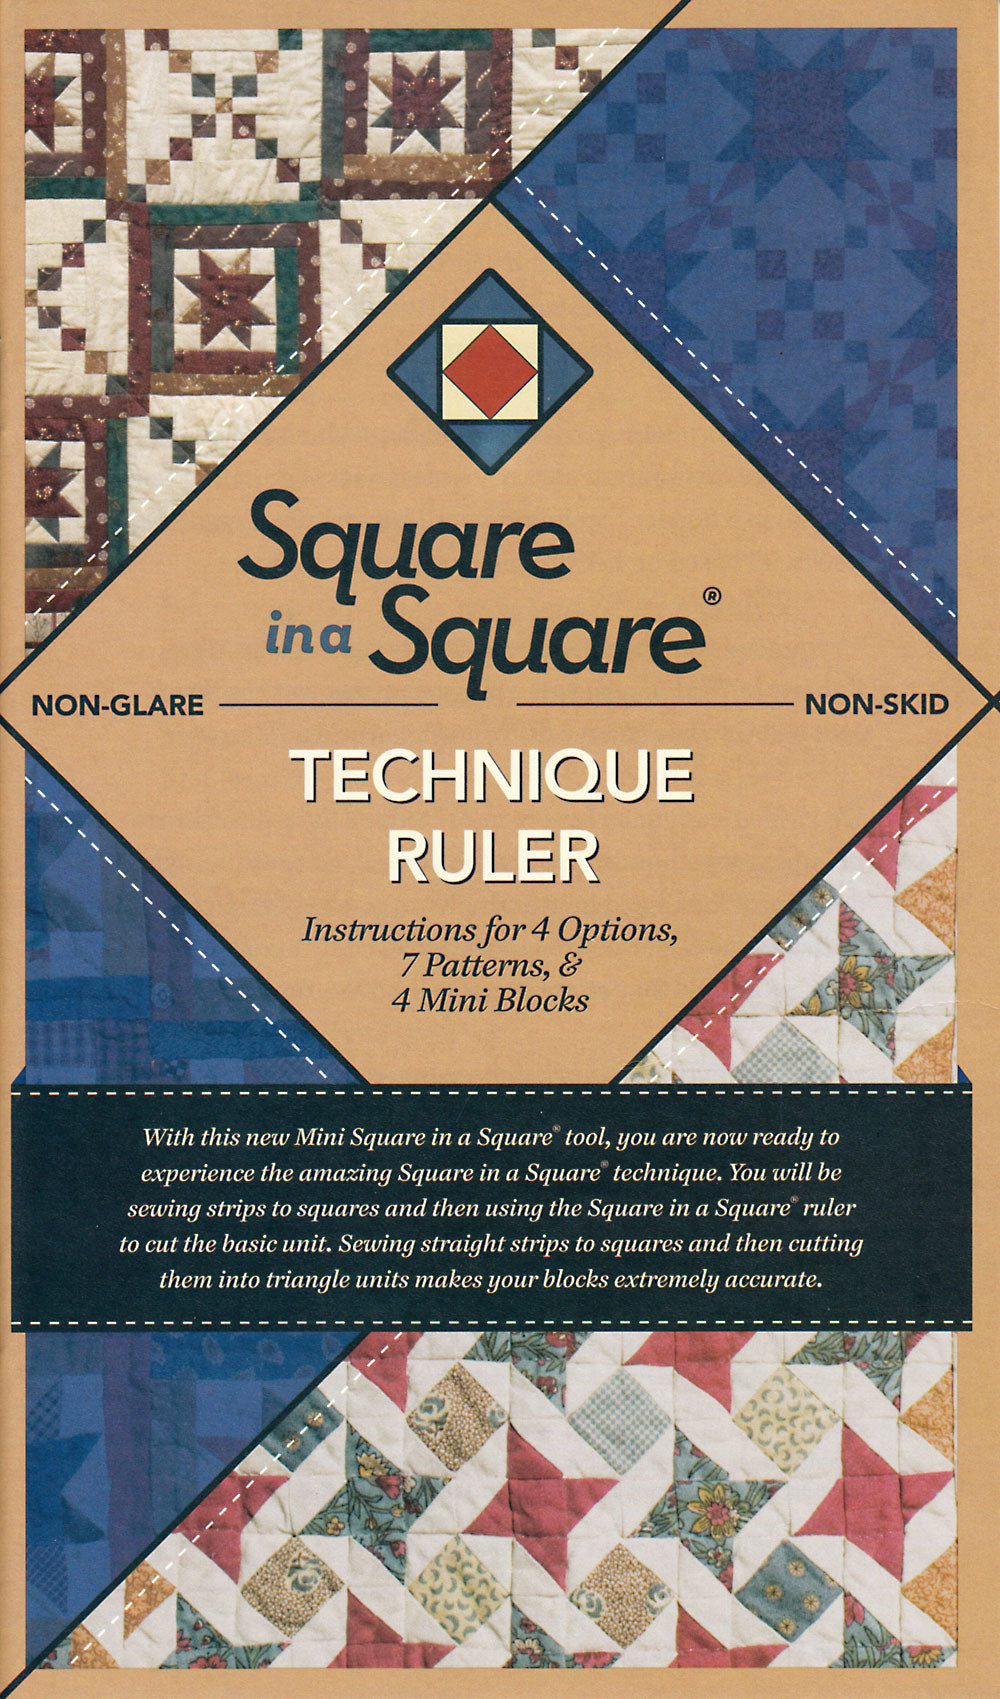 Square In A Square Mini Technique Book Plus Ruler by Jodi Barrows for Square in a Square